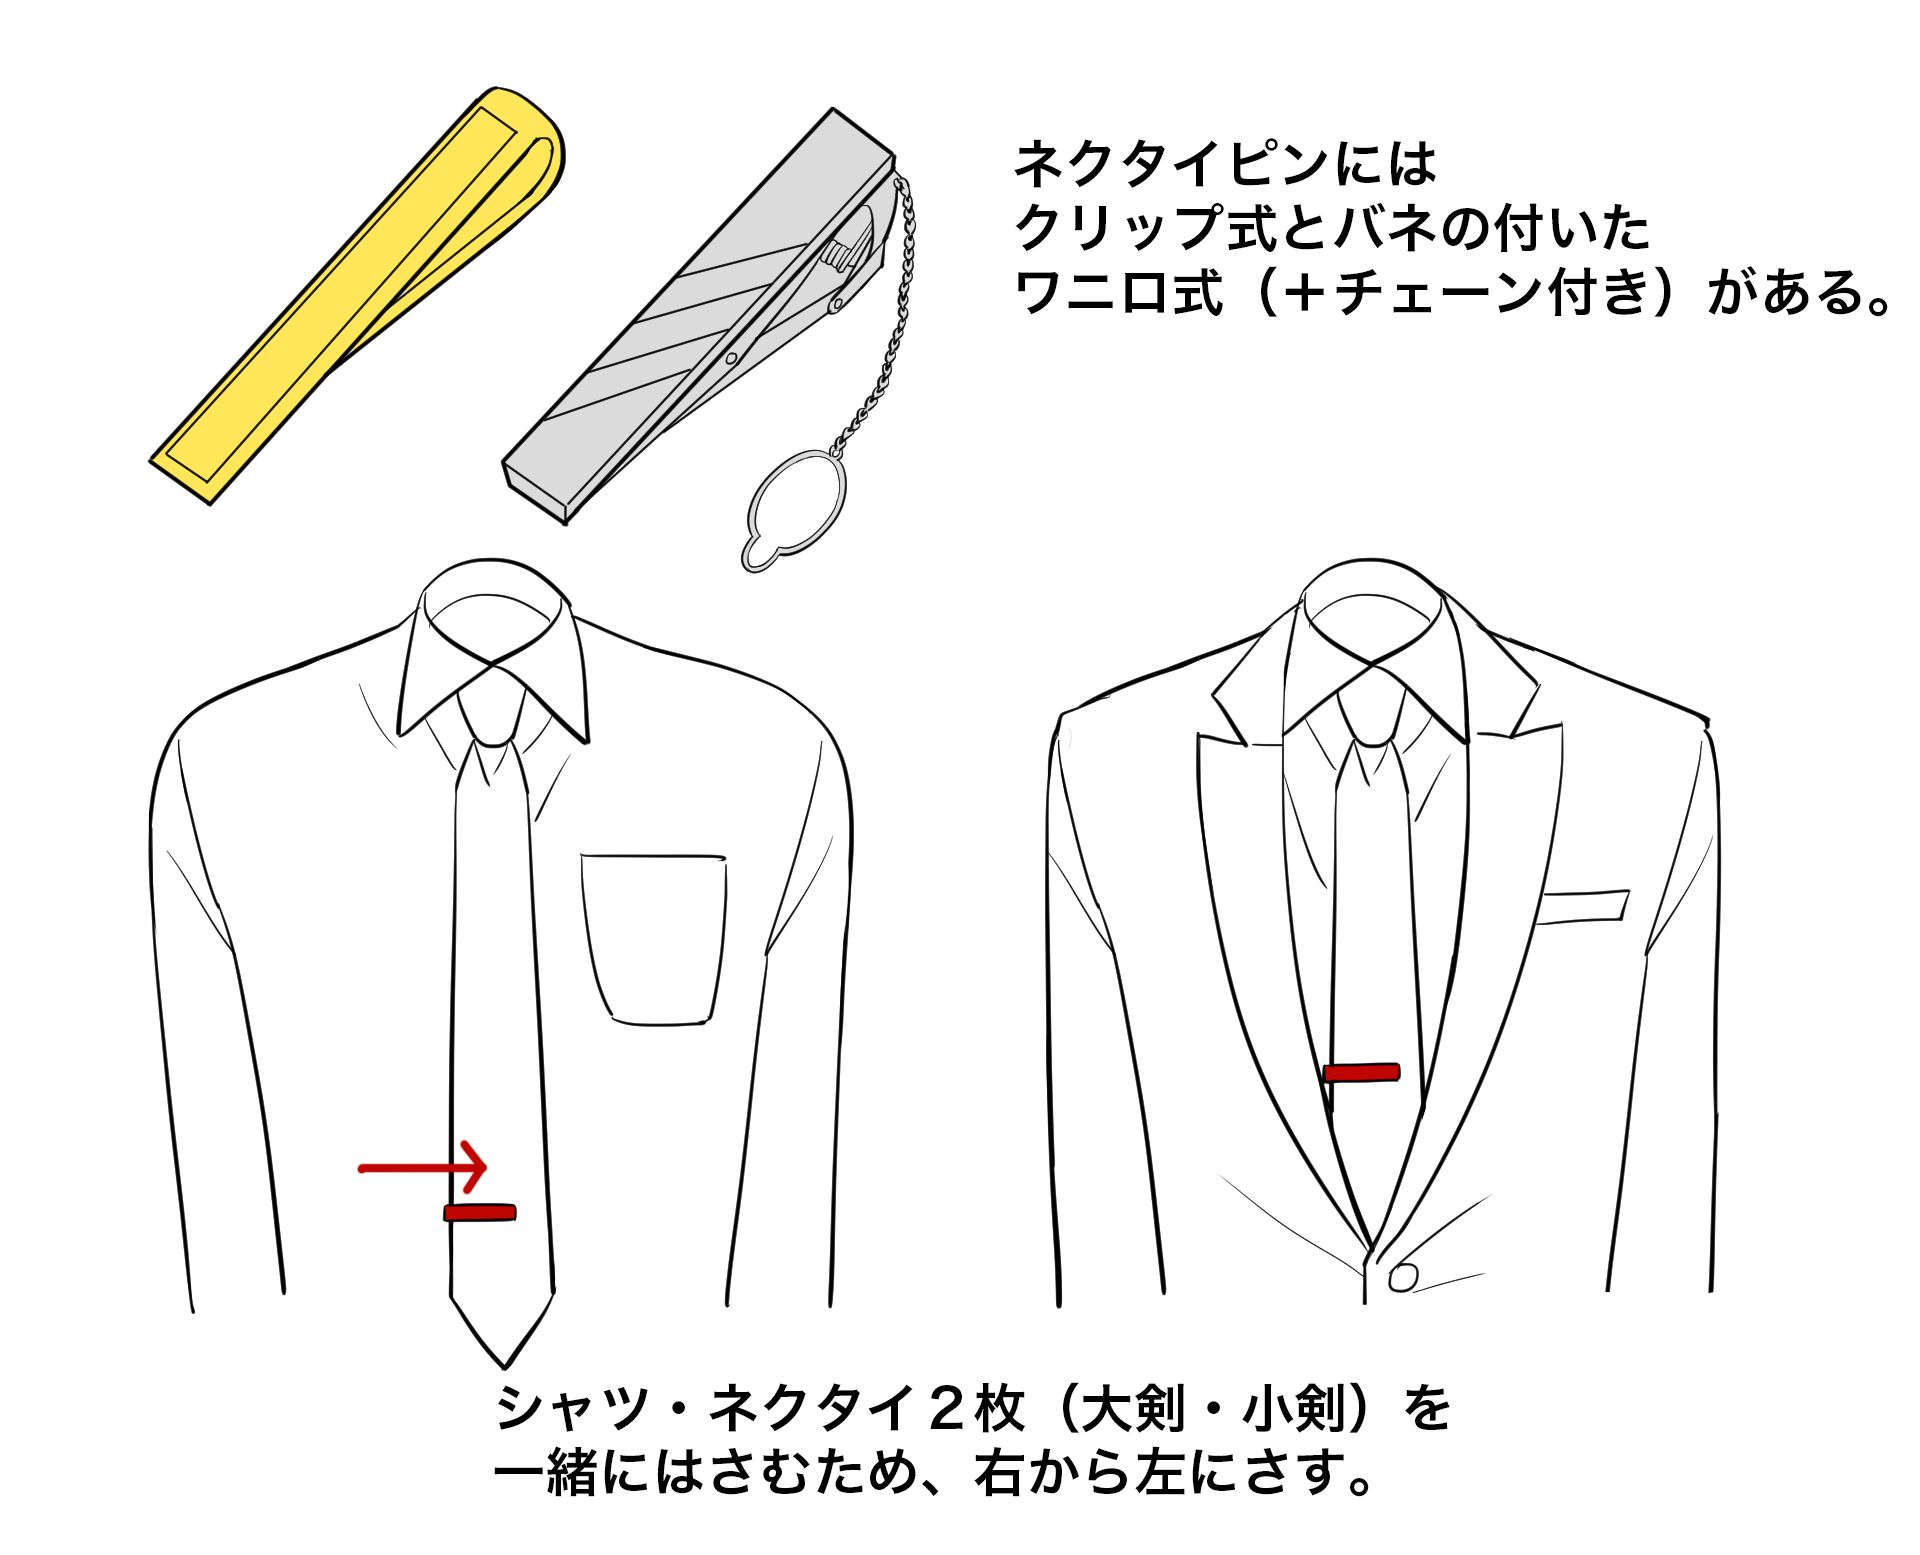 シャツ・ネクタイ２枚(大剣・小剣)を一緒にはさむため、右から左にさす。ネクタイピンにはクリップ式とバネの付いたワニロ式（＋チェーン付き）がある。